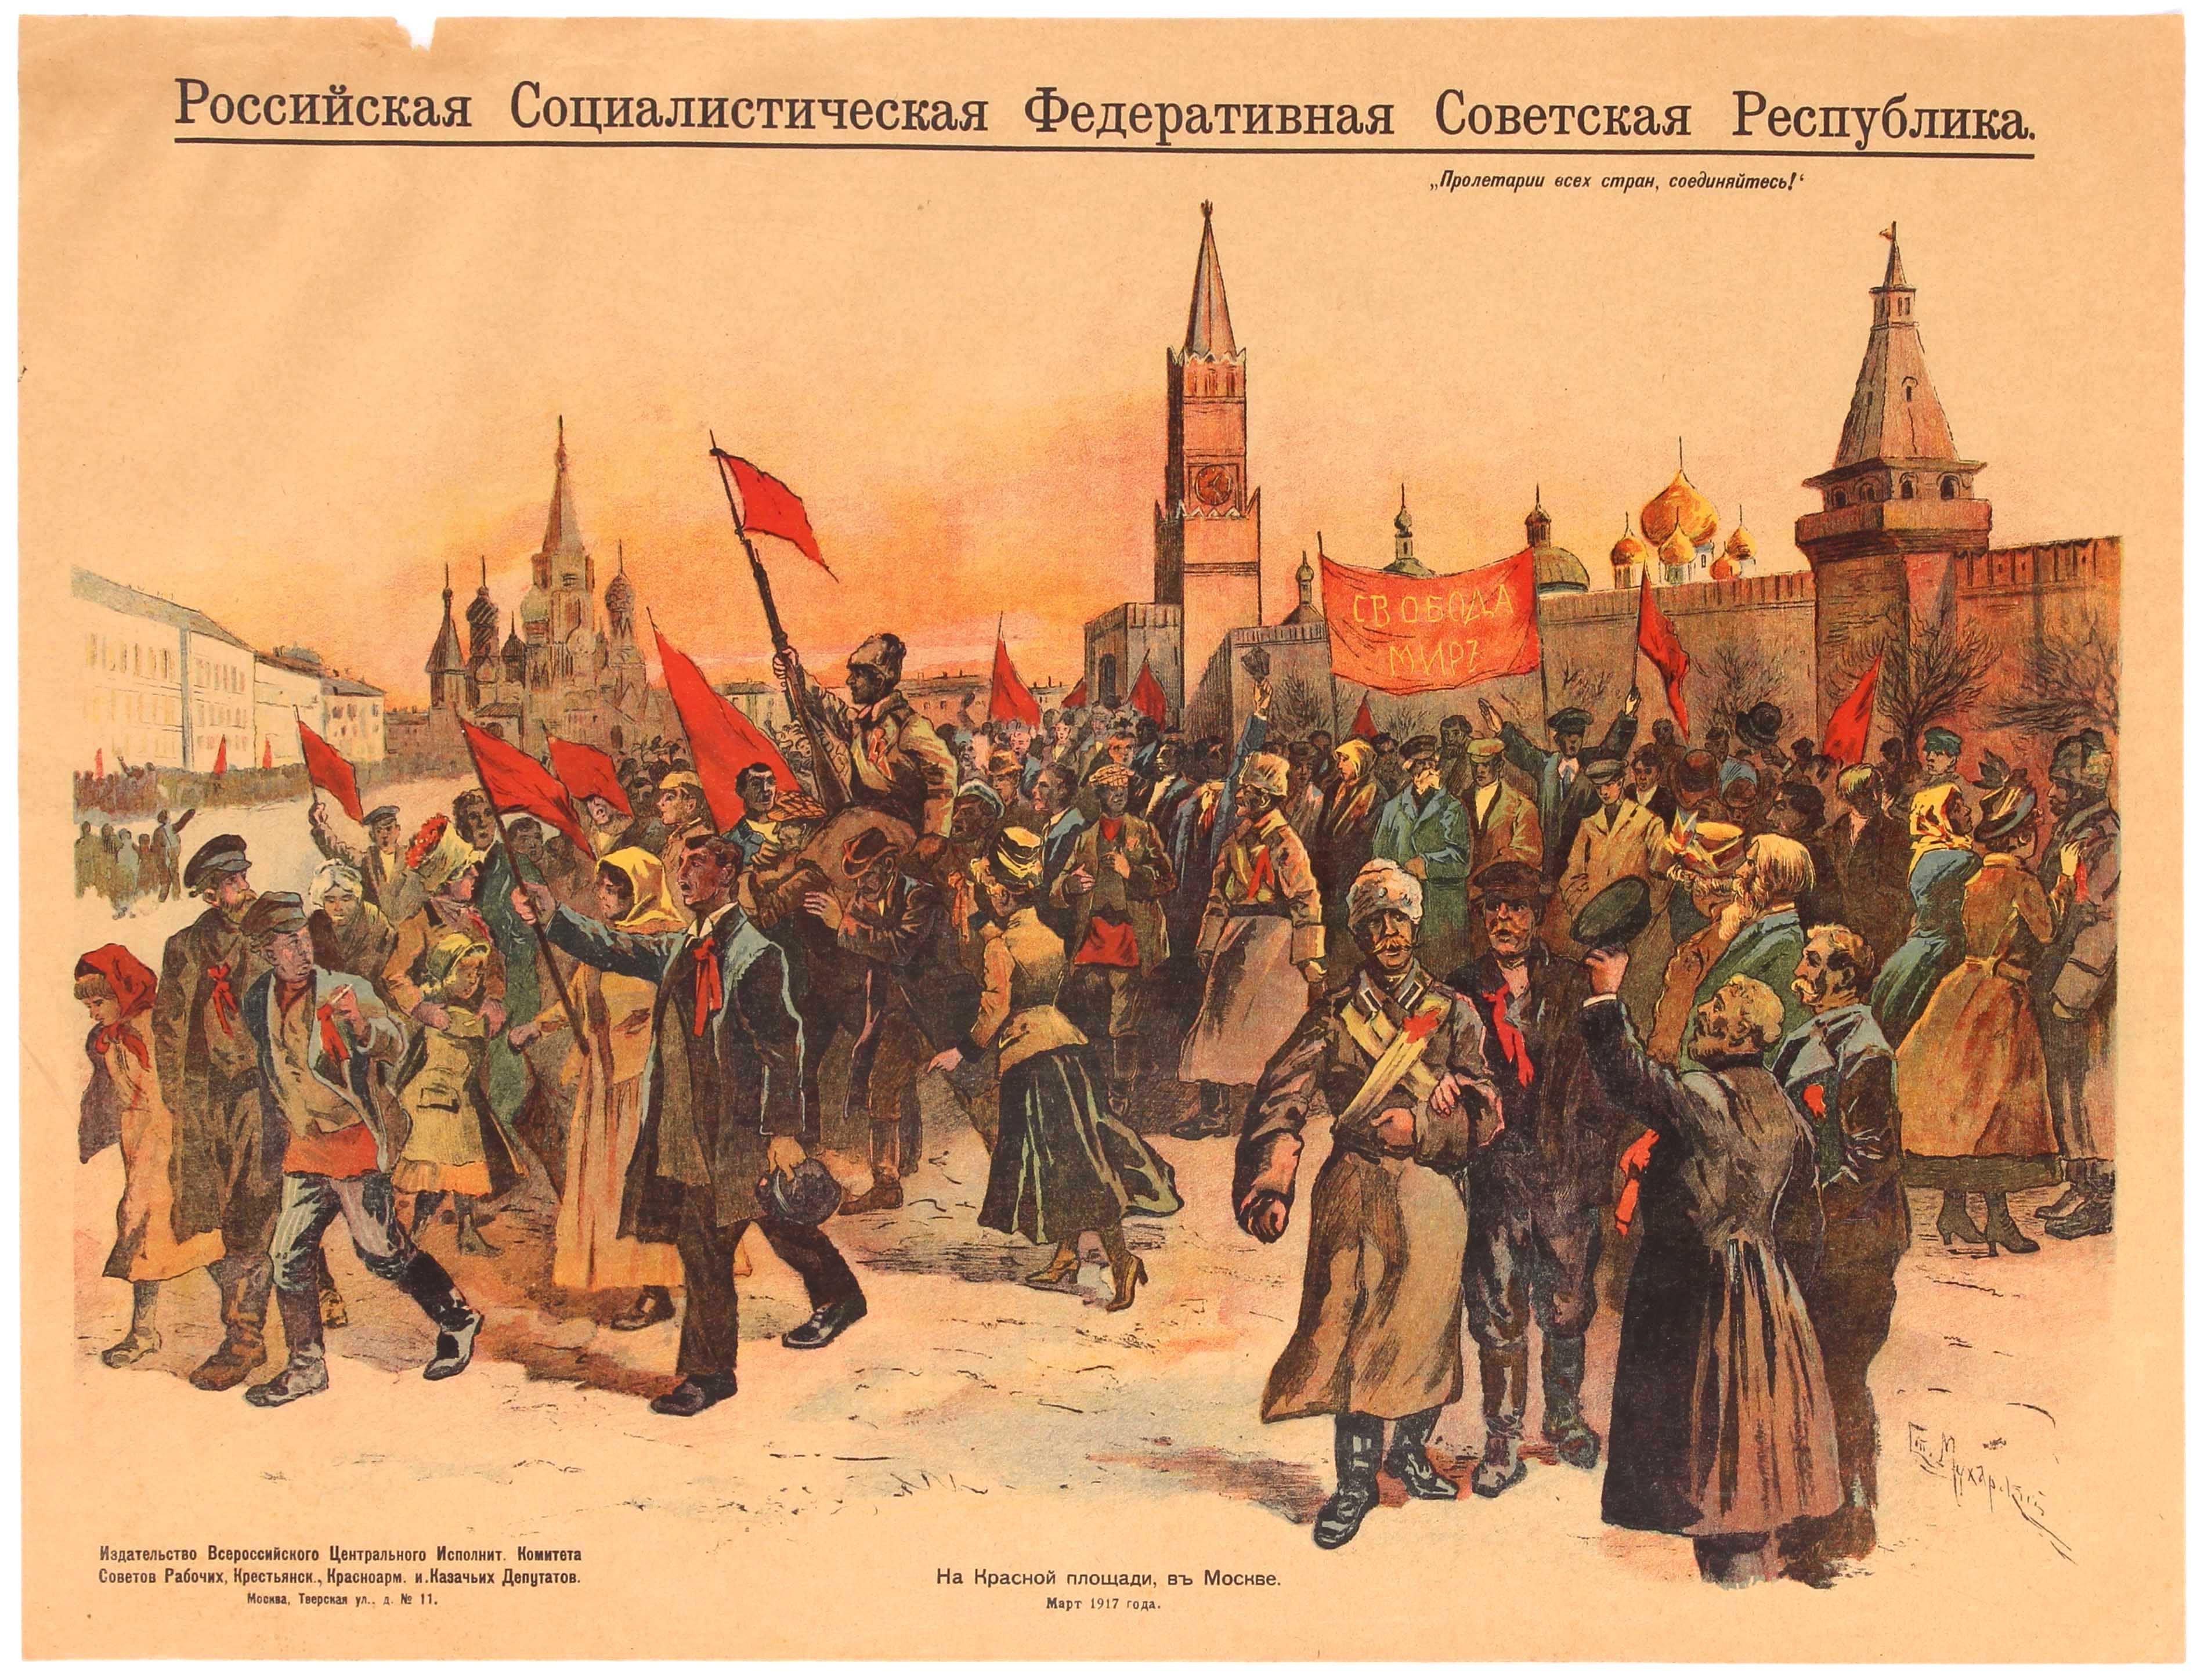 Propaganda Poster Bolshevik Demonstration Moscow October Revolution Russia